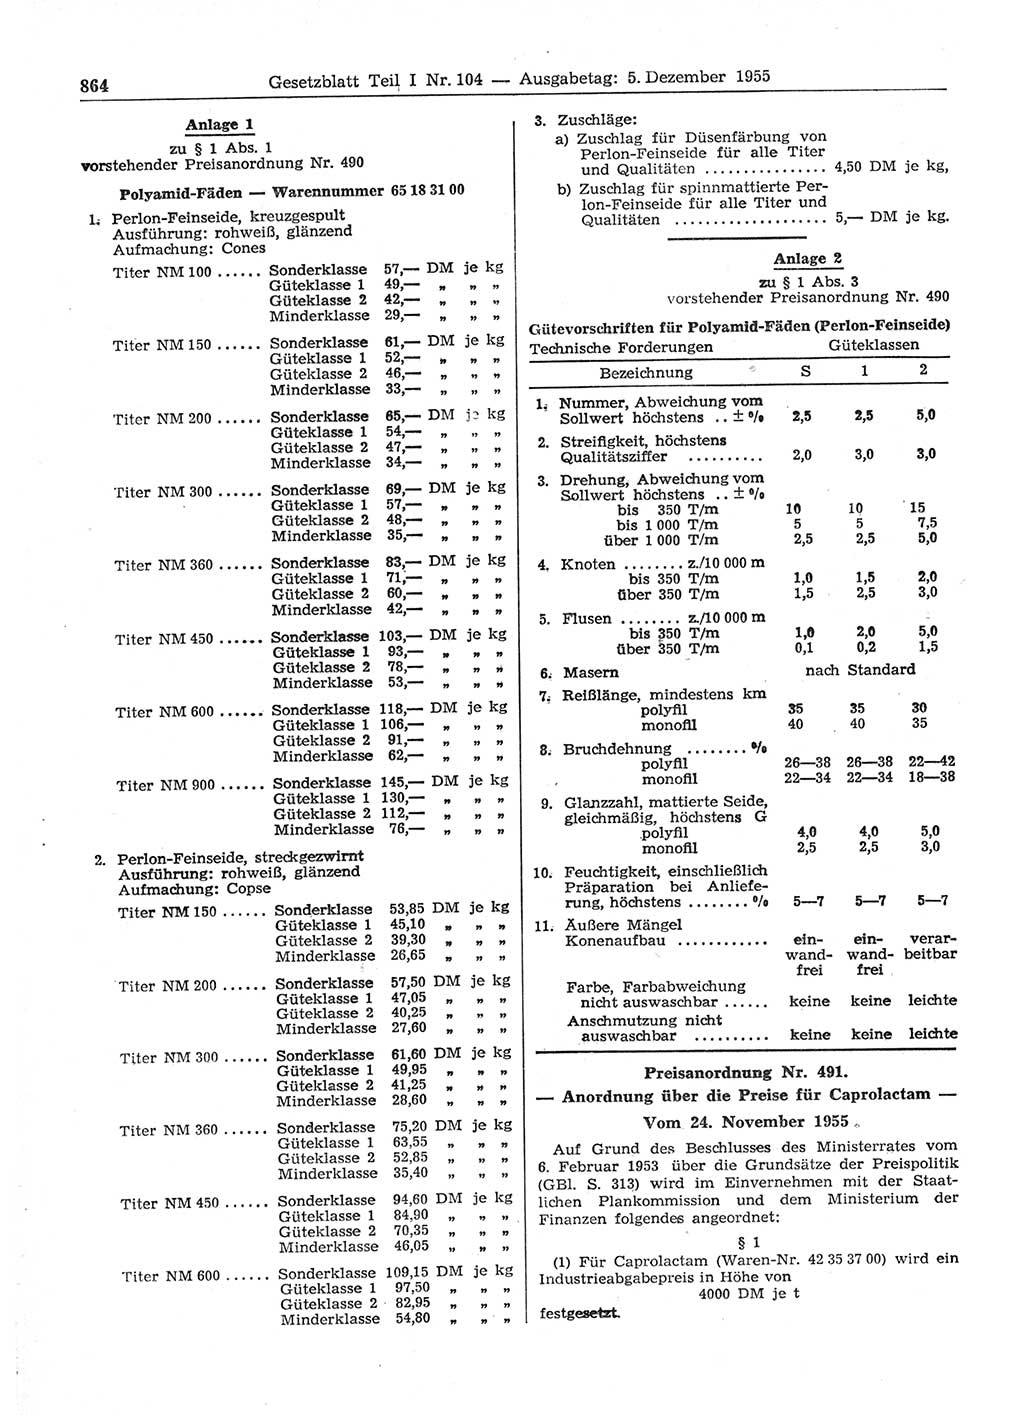 Gesetzblatt (GBl.) der Deutschen Demokratischen Republik (DDR) Teil Ⅰ 1955, Seite 864 (GBl. DDR Ⅰ 1955, S. 864)